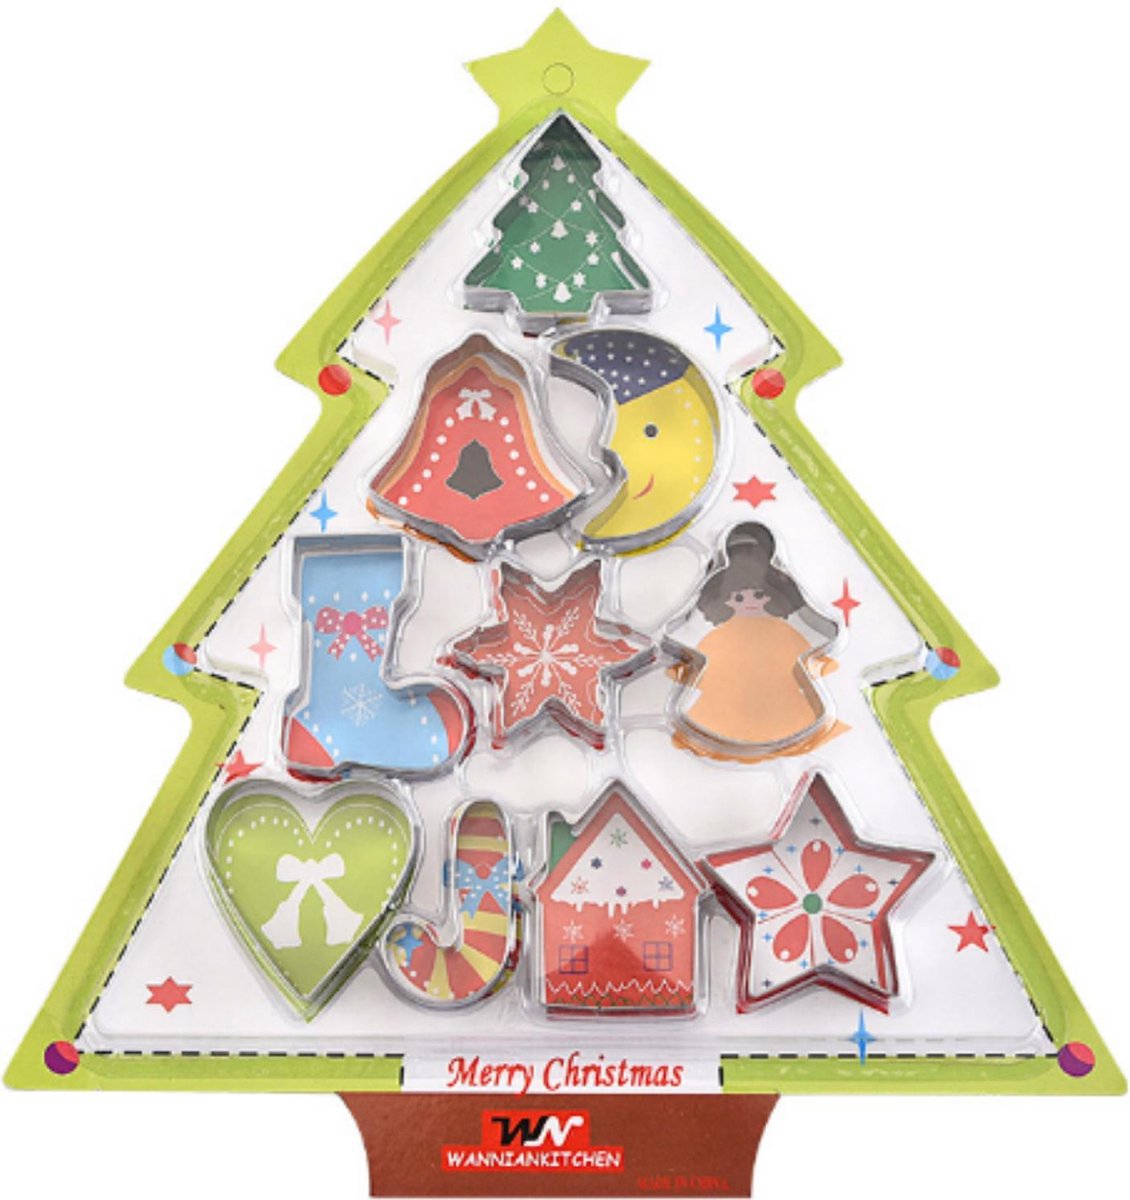 uitsteekvormen kerst | 10 koekvormpjes | cookie cutter | bakvormen kerst | rvs uitstekers kerstkoekjes | kerst | kerstcadeautje